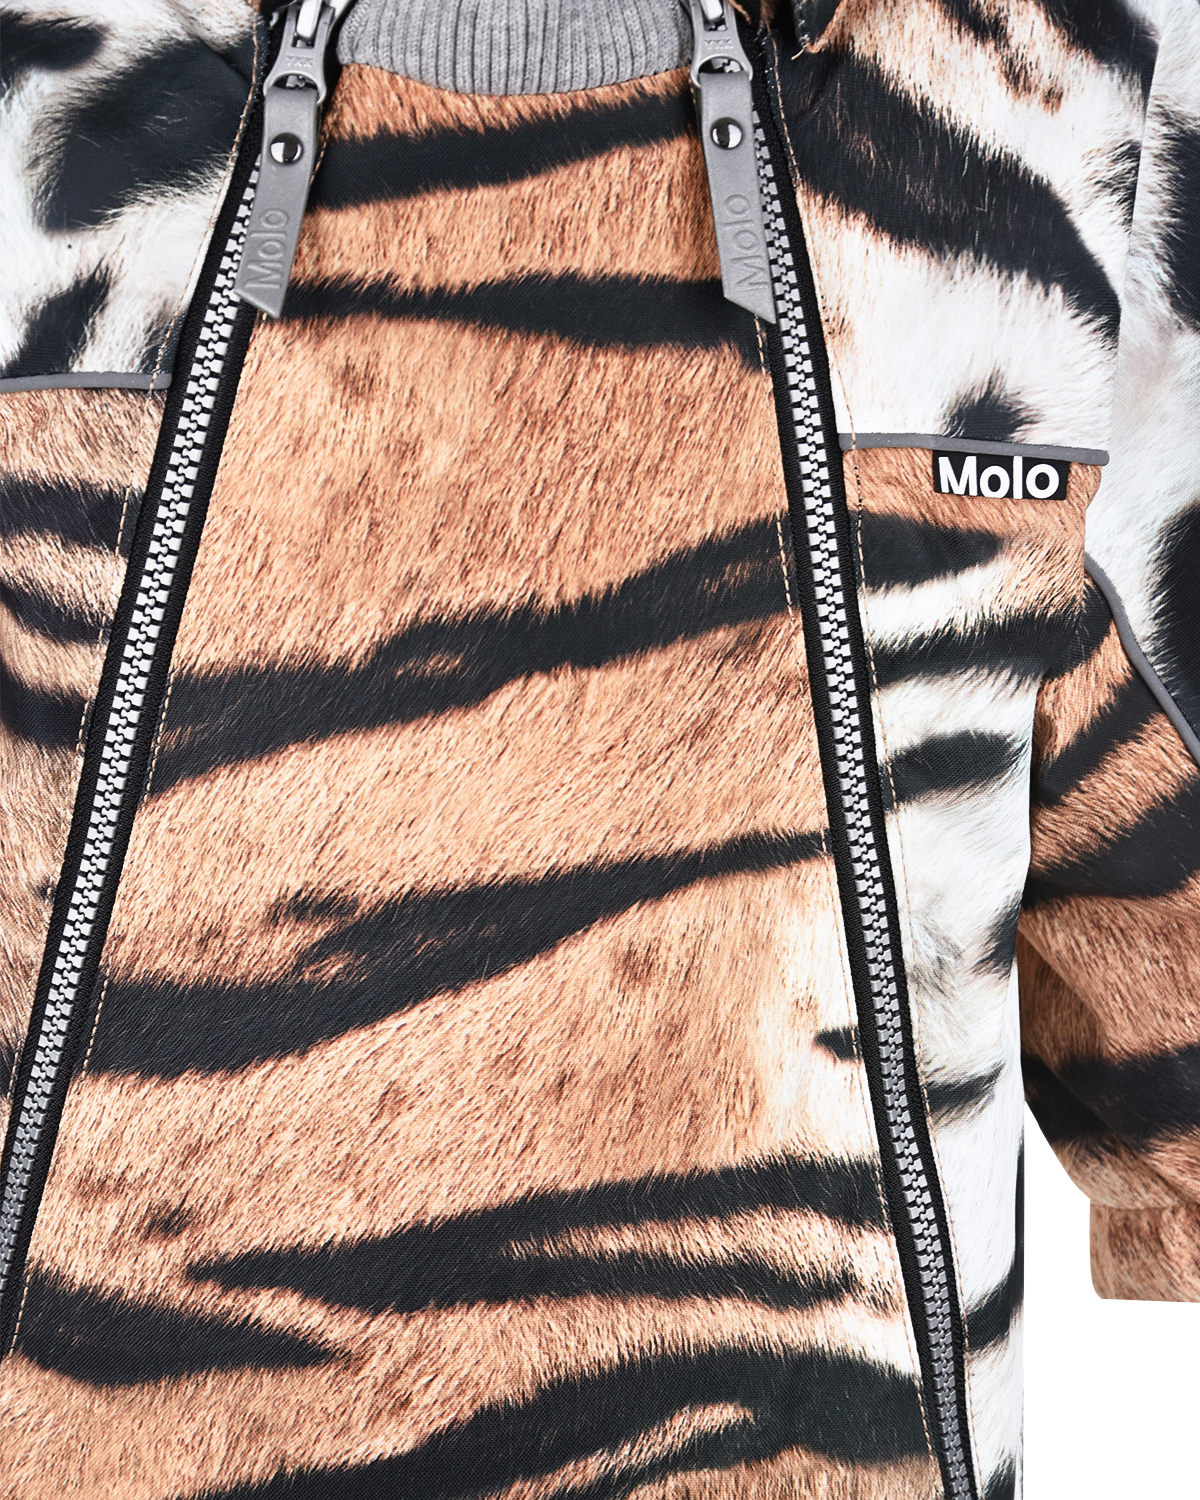 Комбинезон с принтом "Тигр" Molo детский, размер 80, цвет коричневый - фото 4